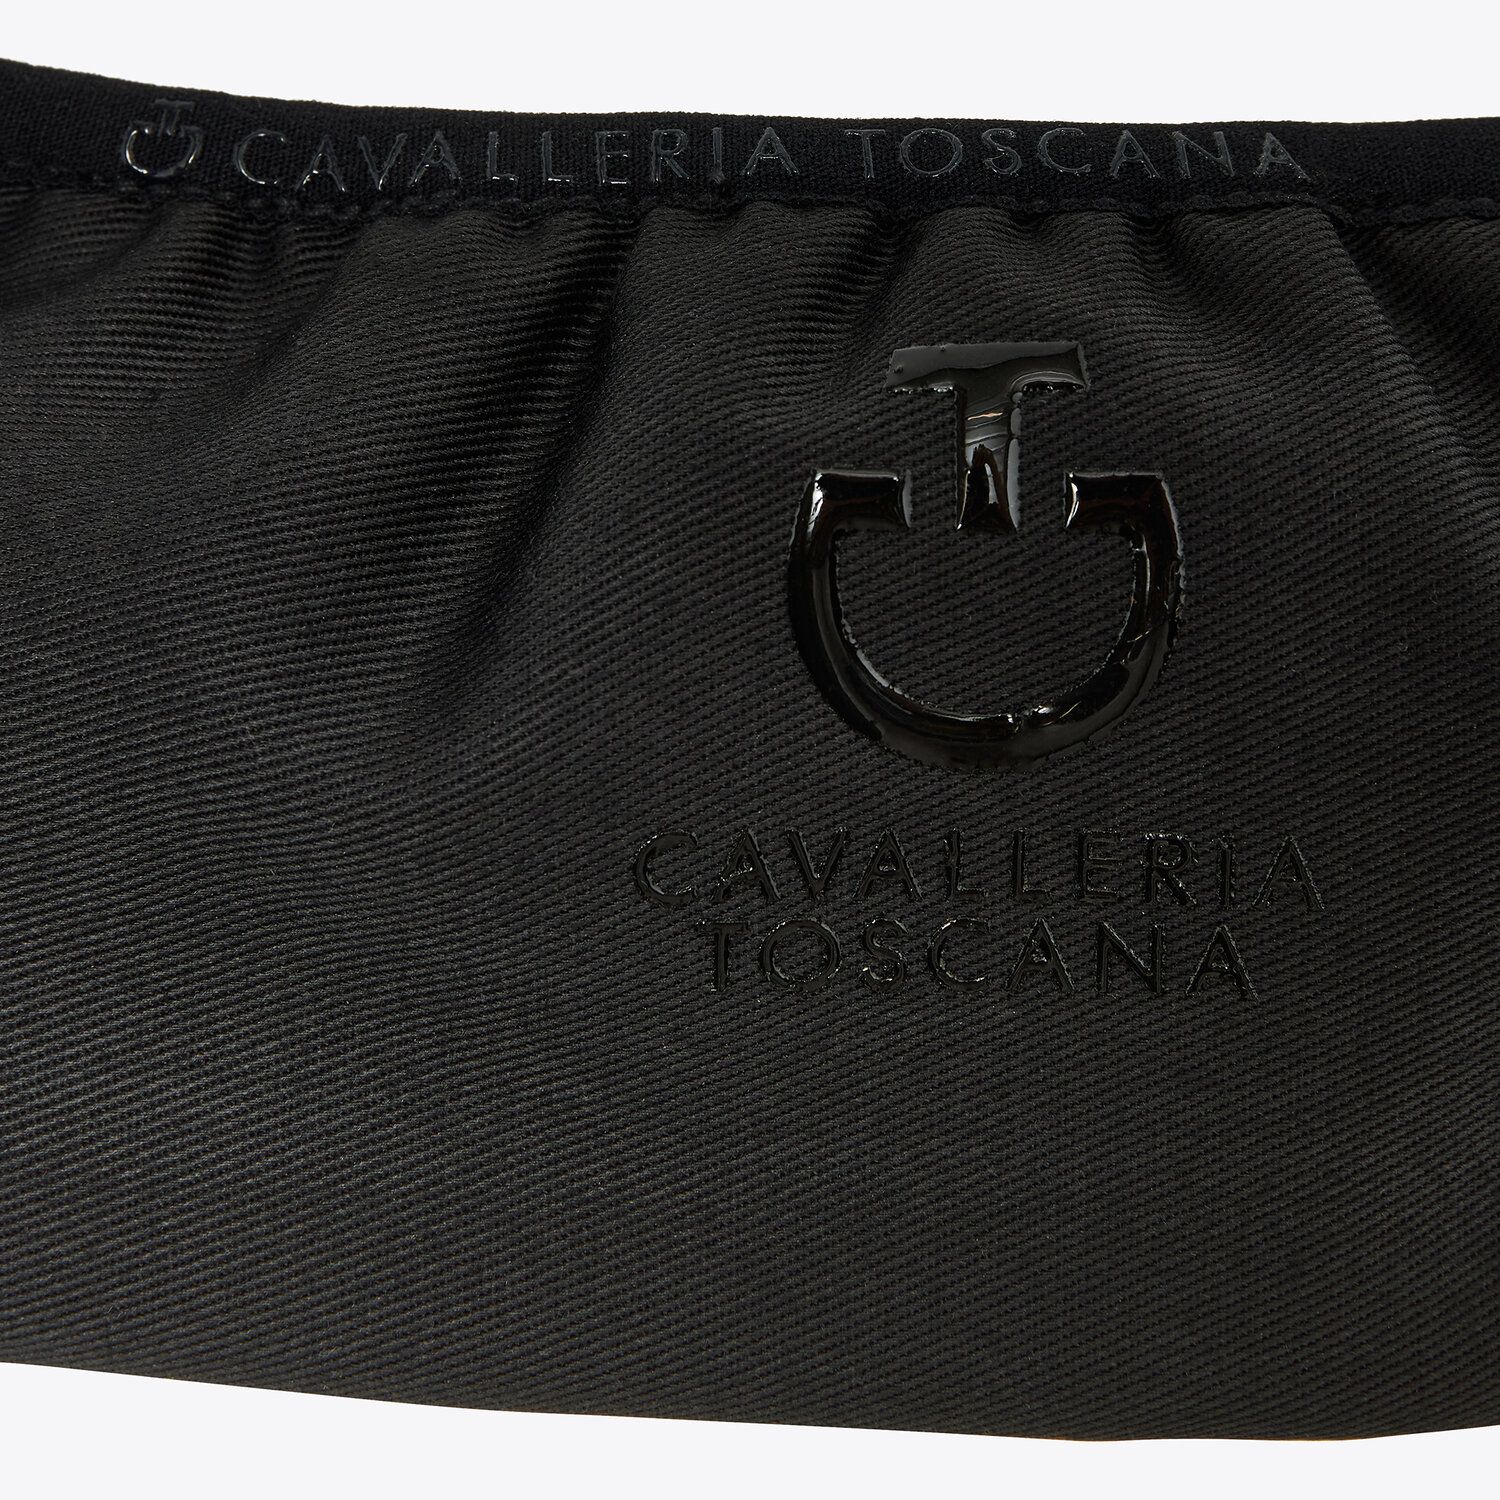 Cavalleria Toscana CT Cotton Stirrup Cover Short BLACK-3